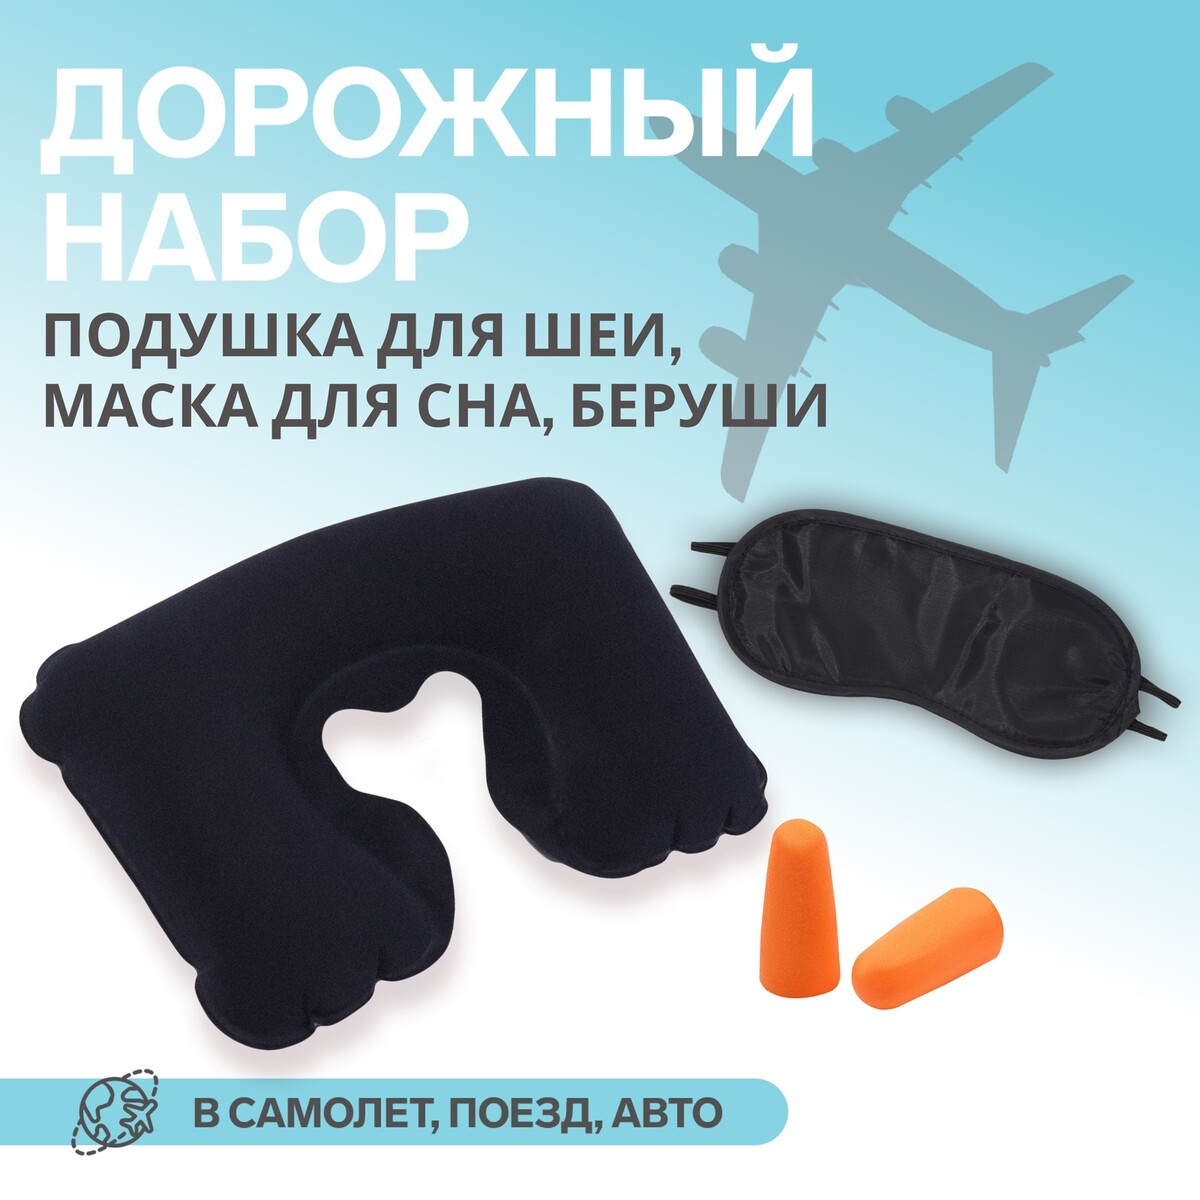 Набор туристический: подушка для шеи, маска для сна, беруши набор для подводного плавания intex маска с трубкой от 14 лет 55648